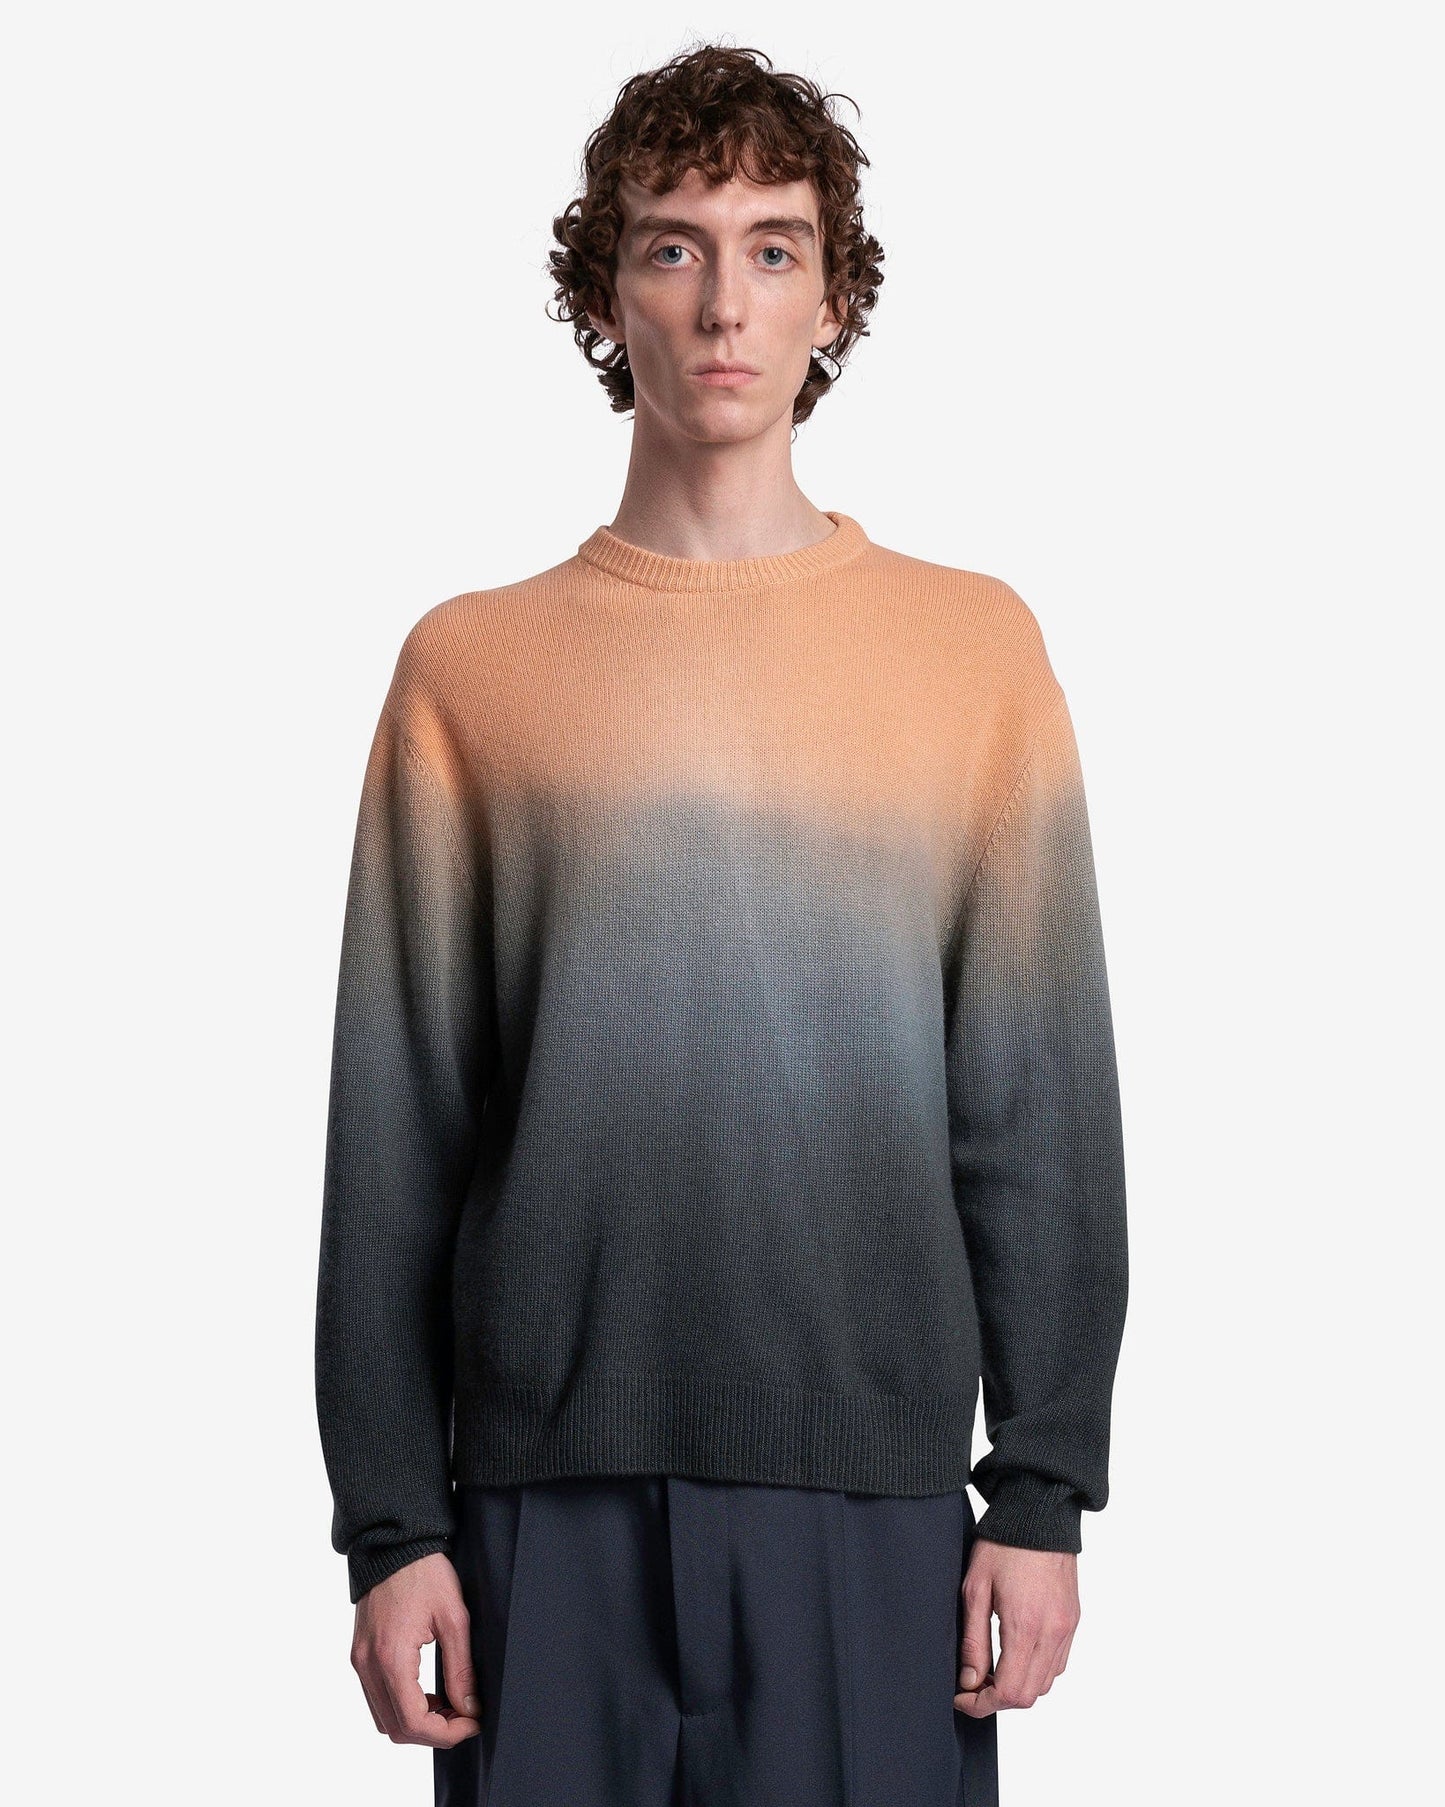 Jil Sander Men's Sweater Wool Relaxed Fit Sweater in Open Orange